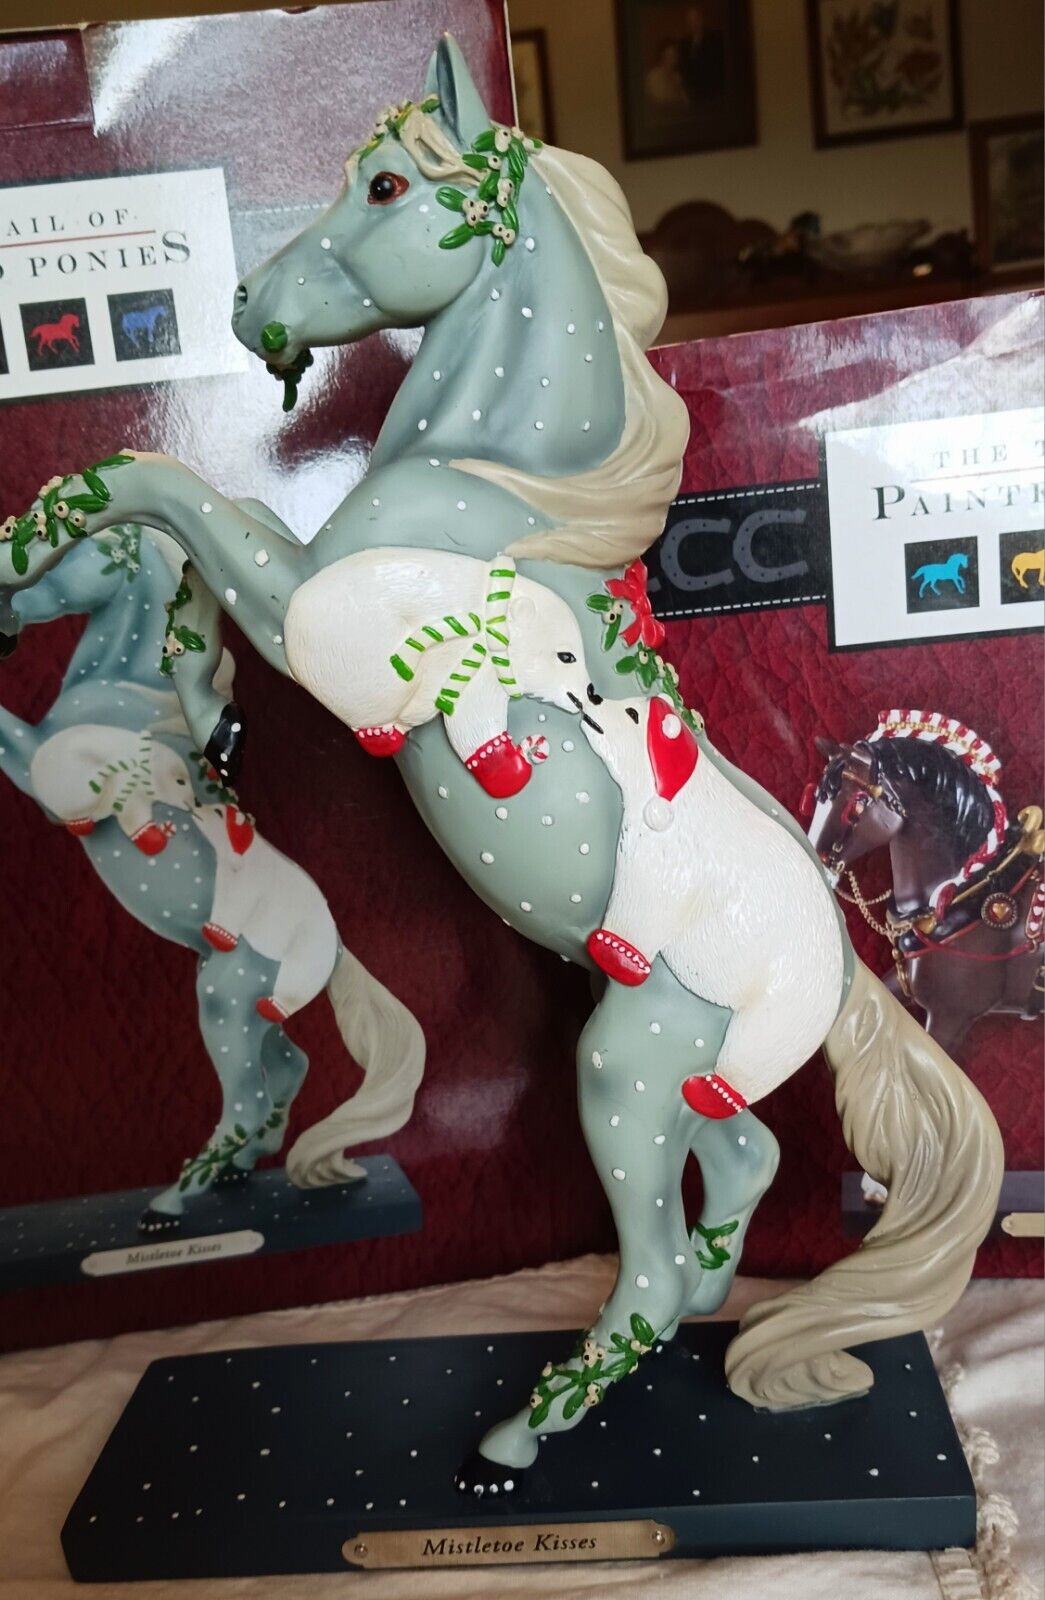 trail of painted ponies figurine Mistletoe Kisses 1E/0999